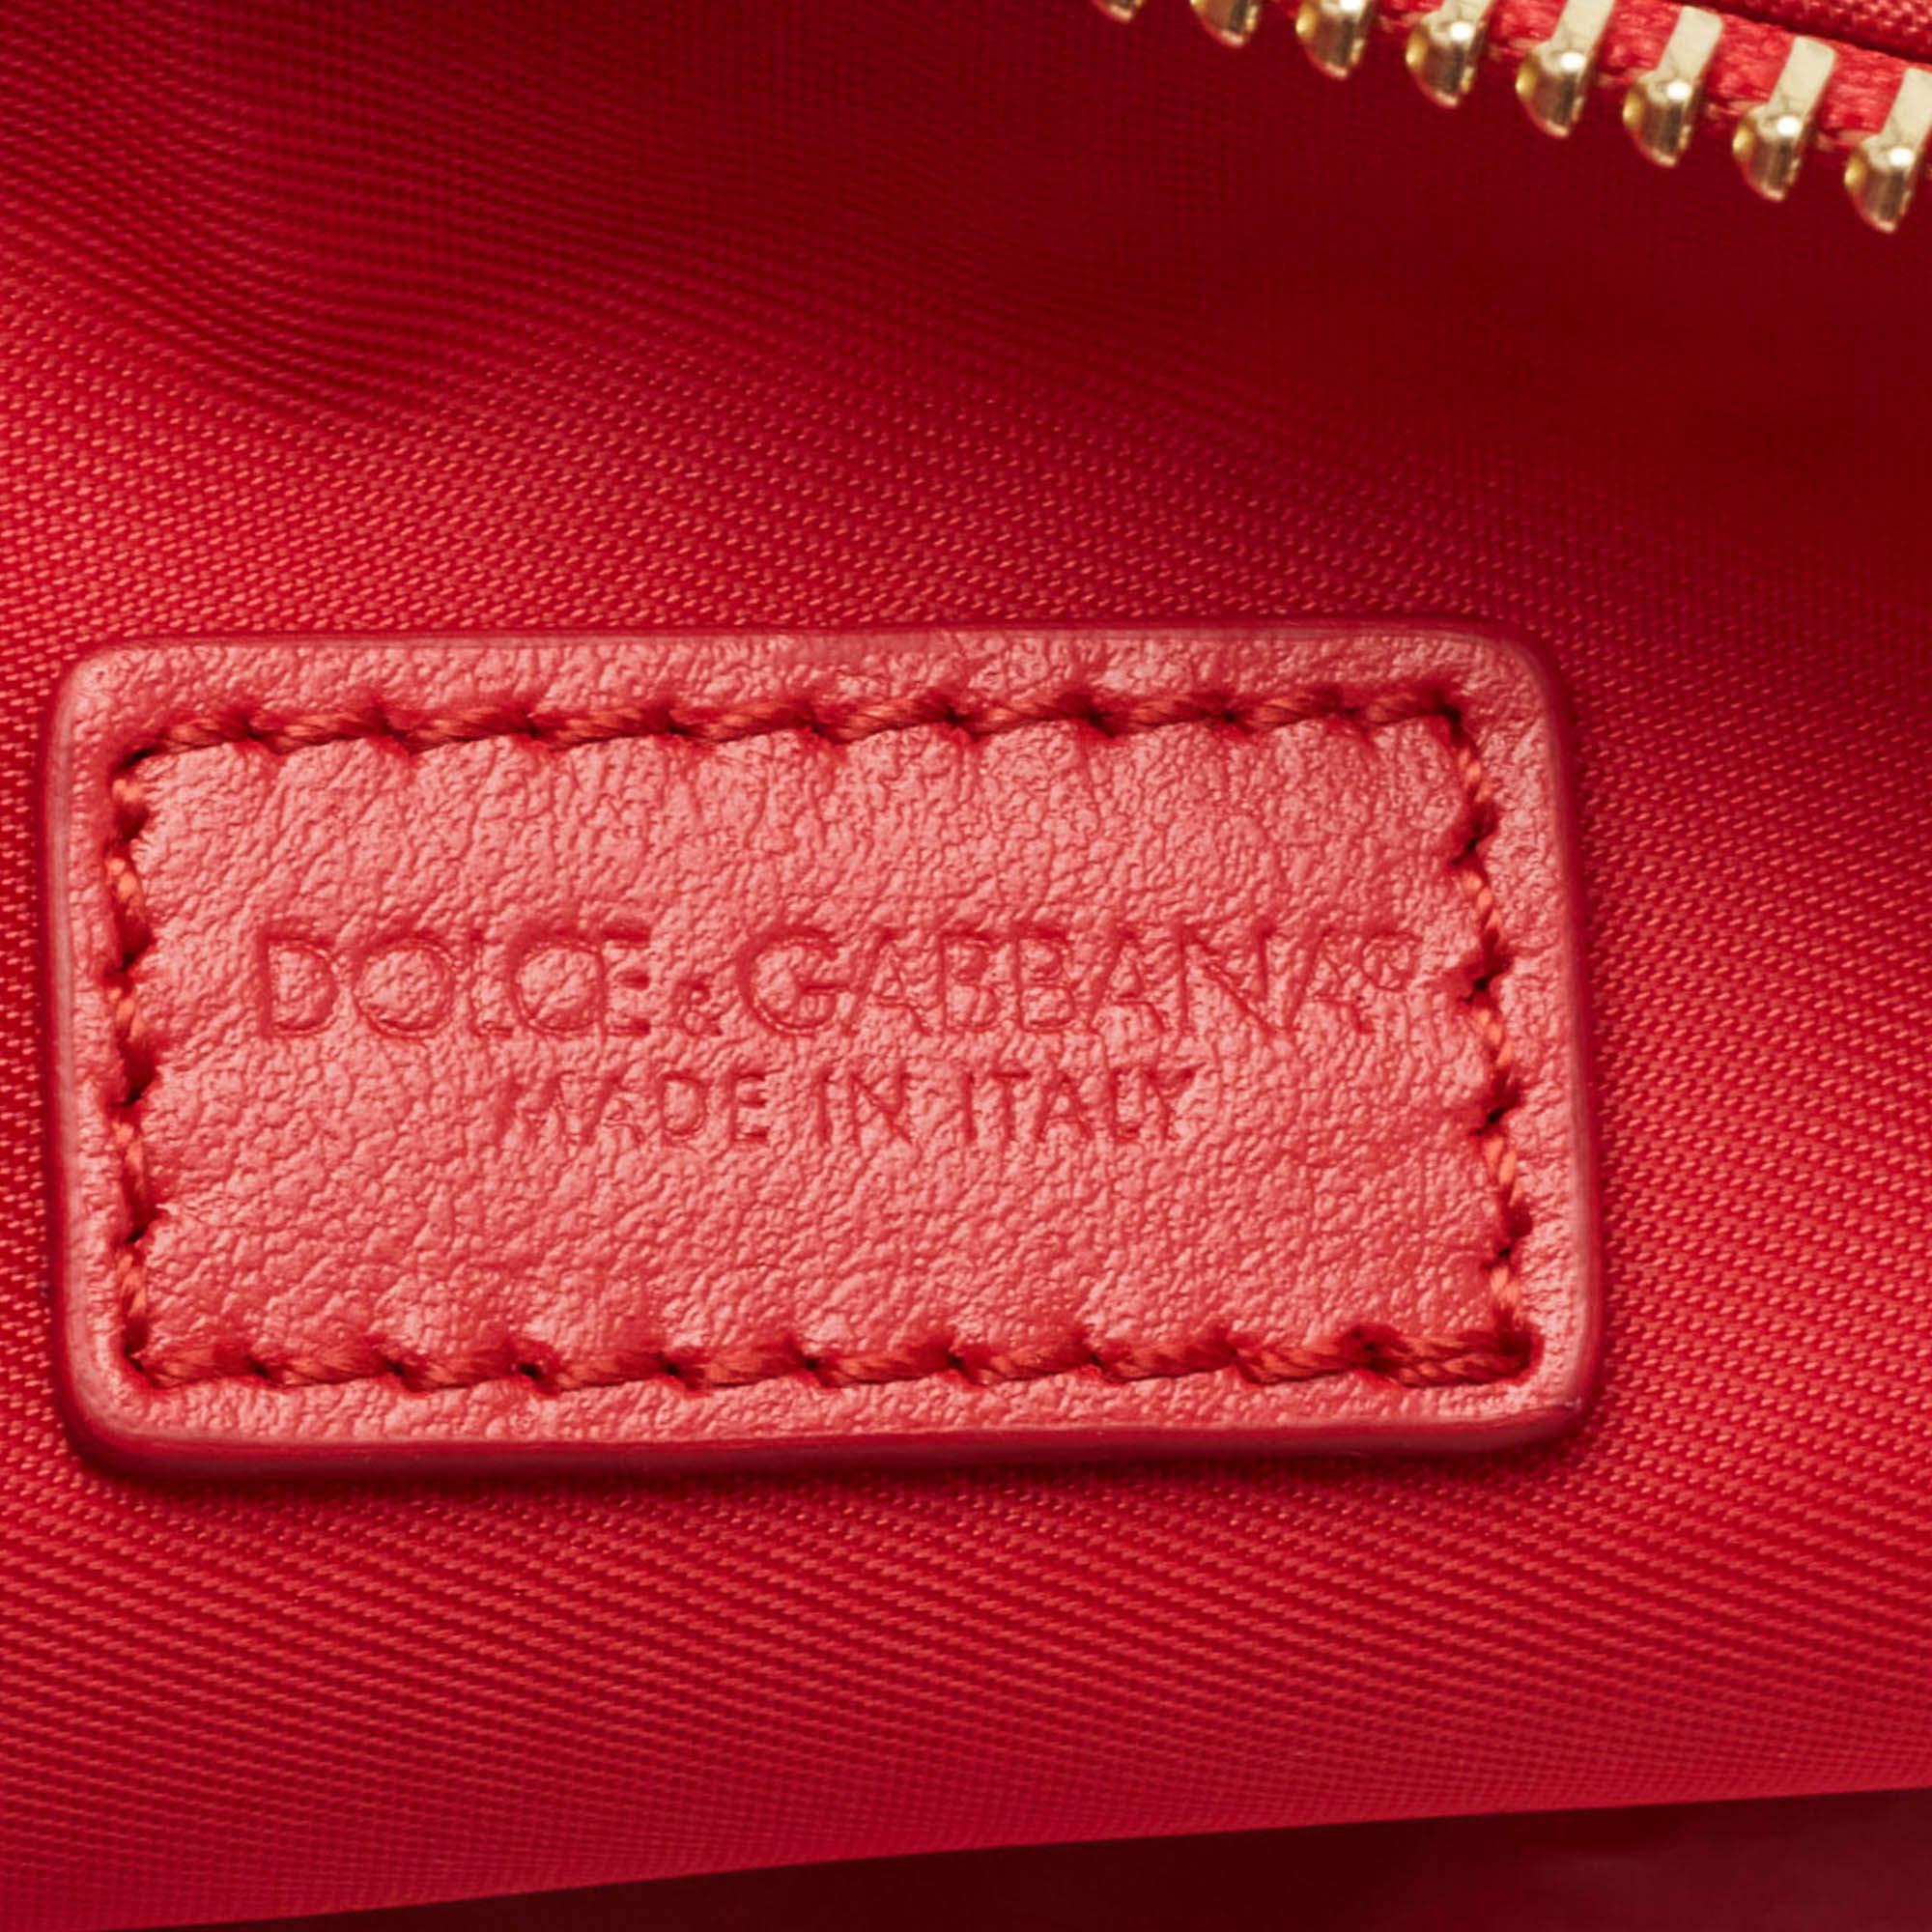 Dolce & Gabbana Multicolor Print Nylon Zip Pouch 4